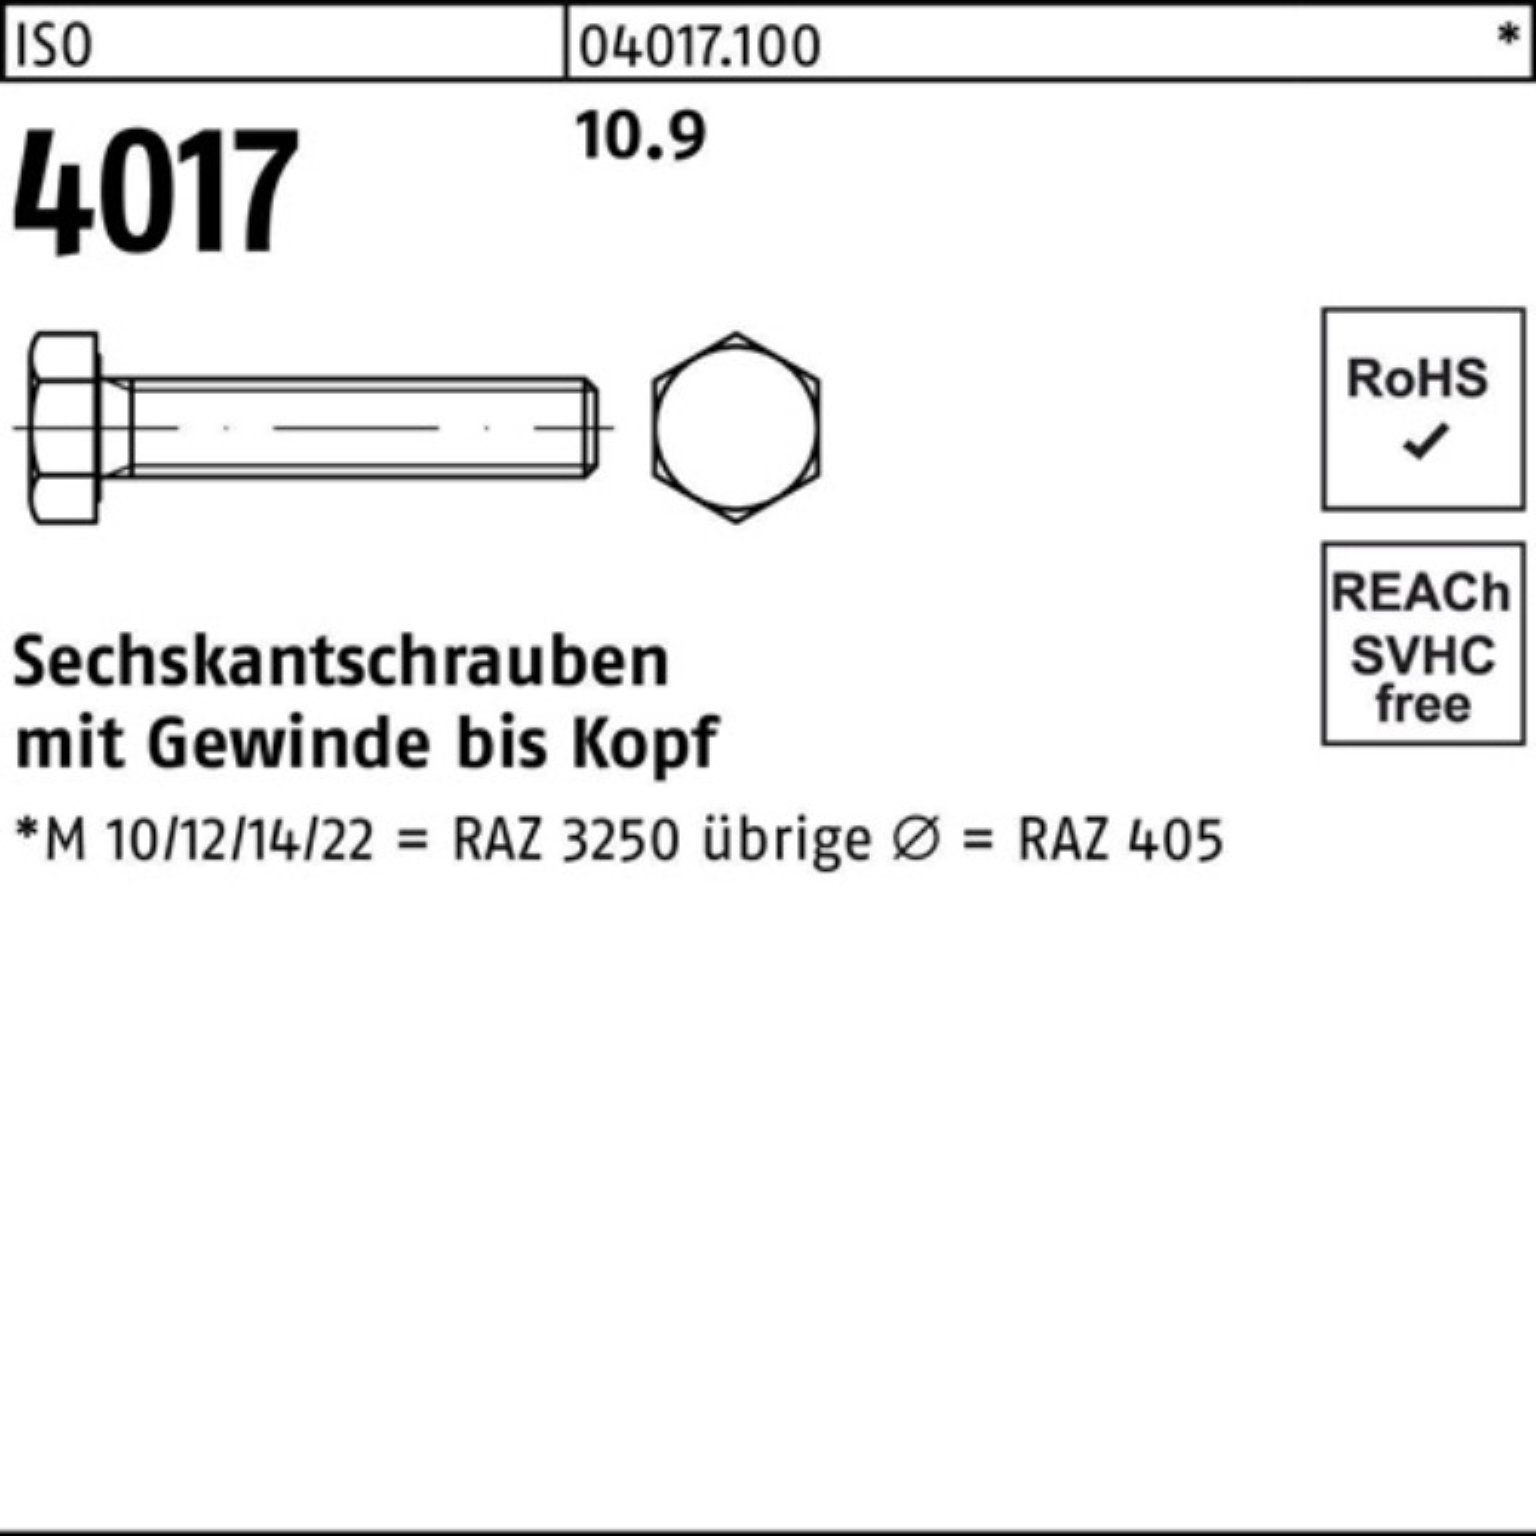 4 Sechskantschraube M10x VG 75 4017 ISO Stück Pack 100er 10.9 Bufab Sechskantschraube 100 ISO